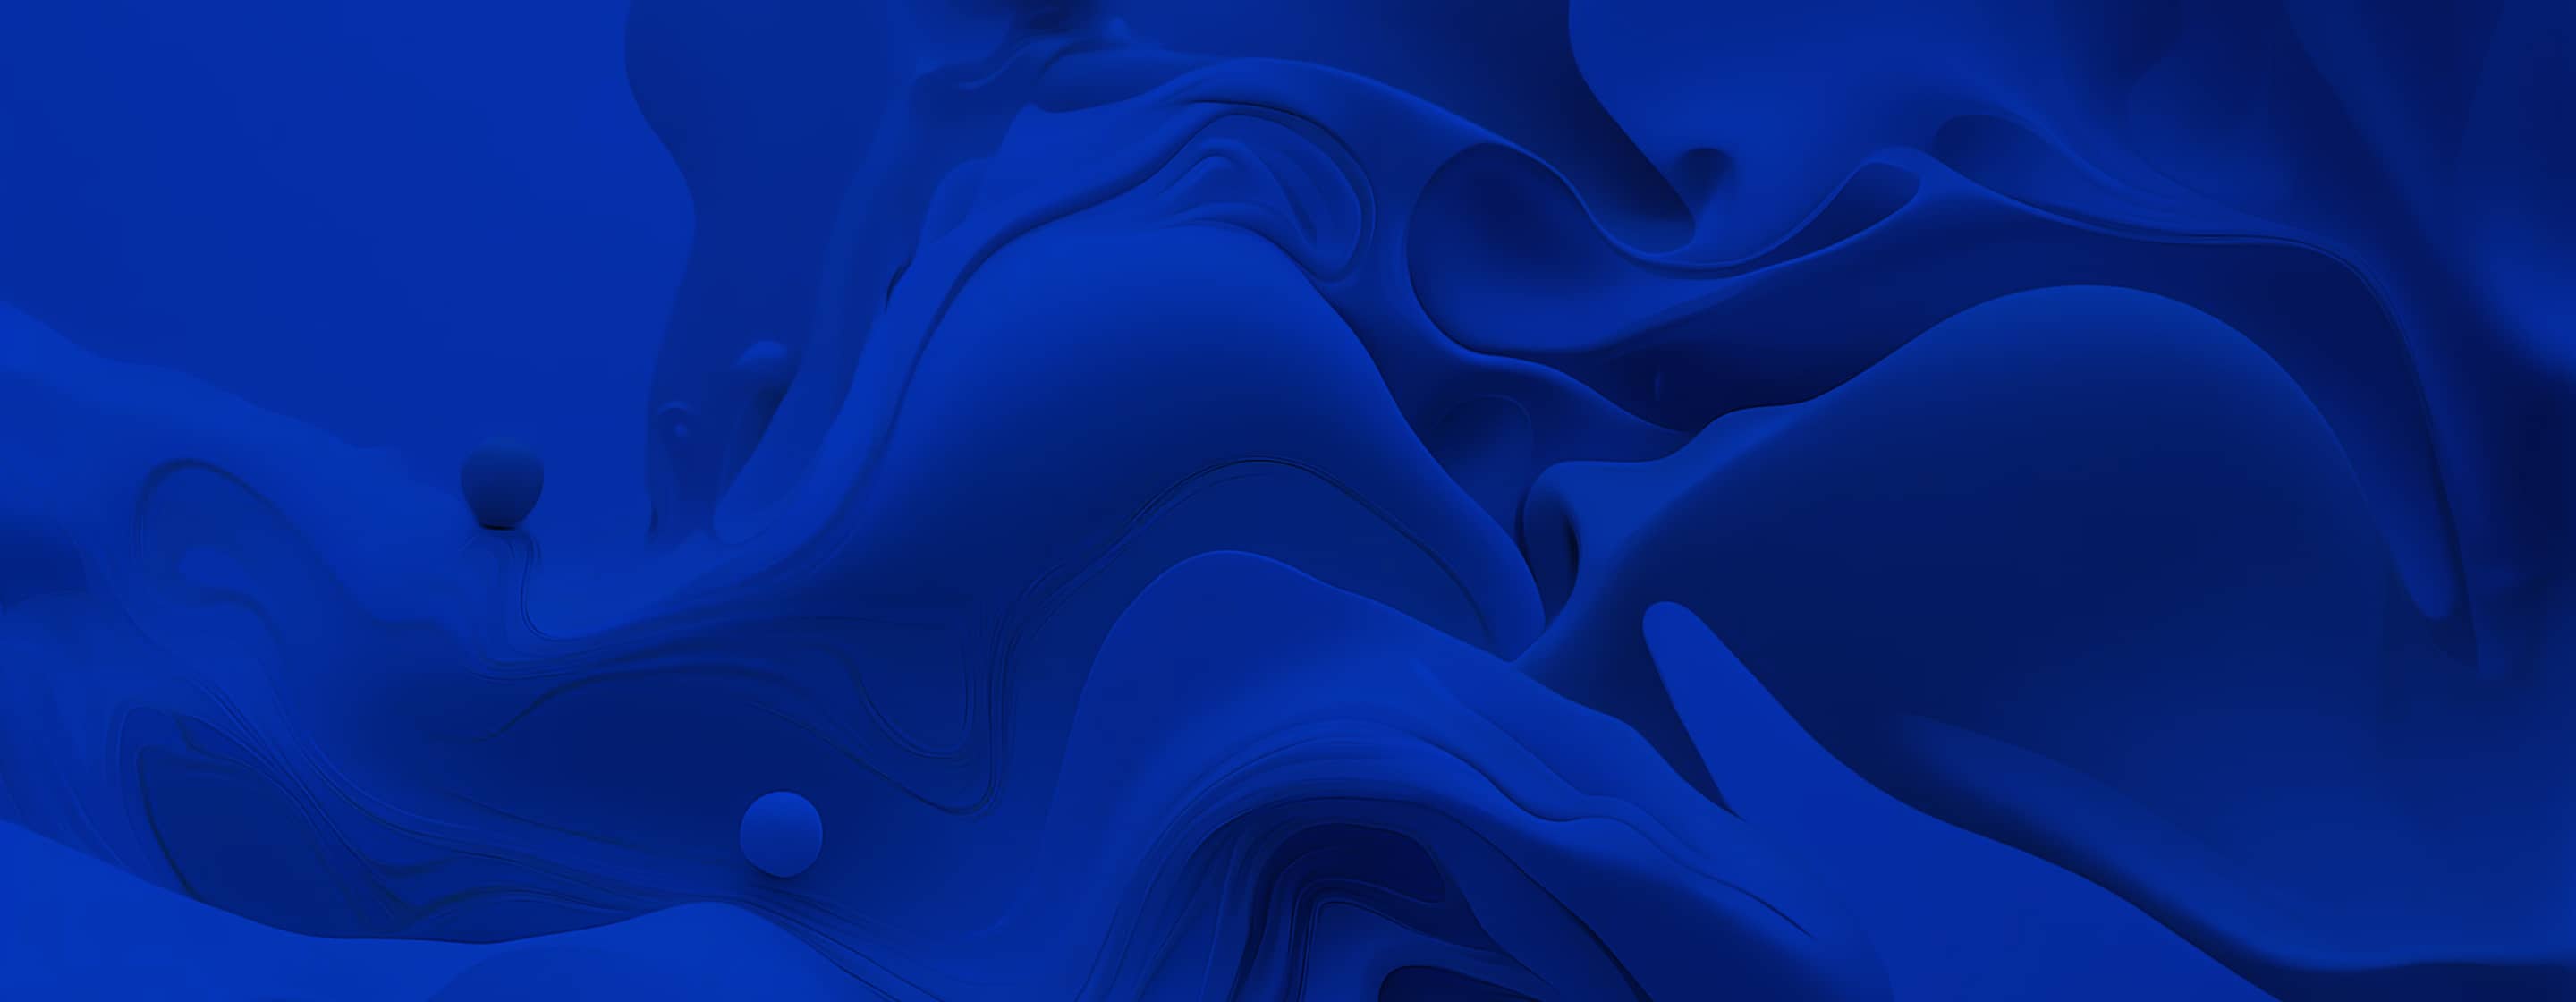 blue wave decorative design